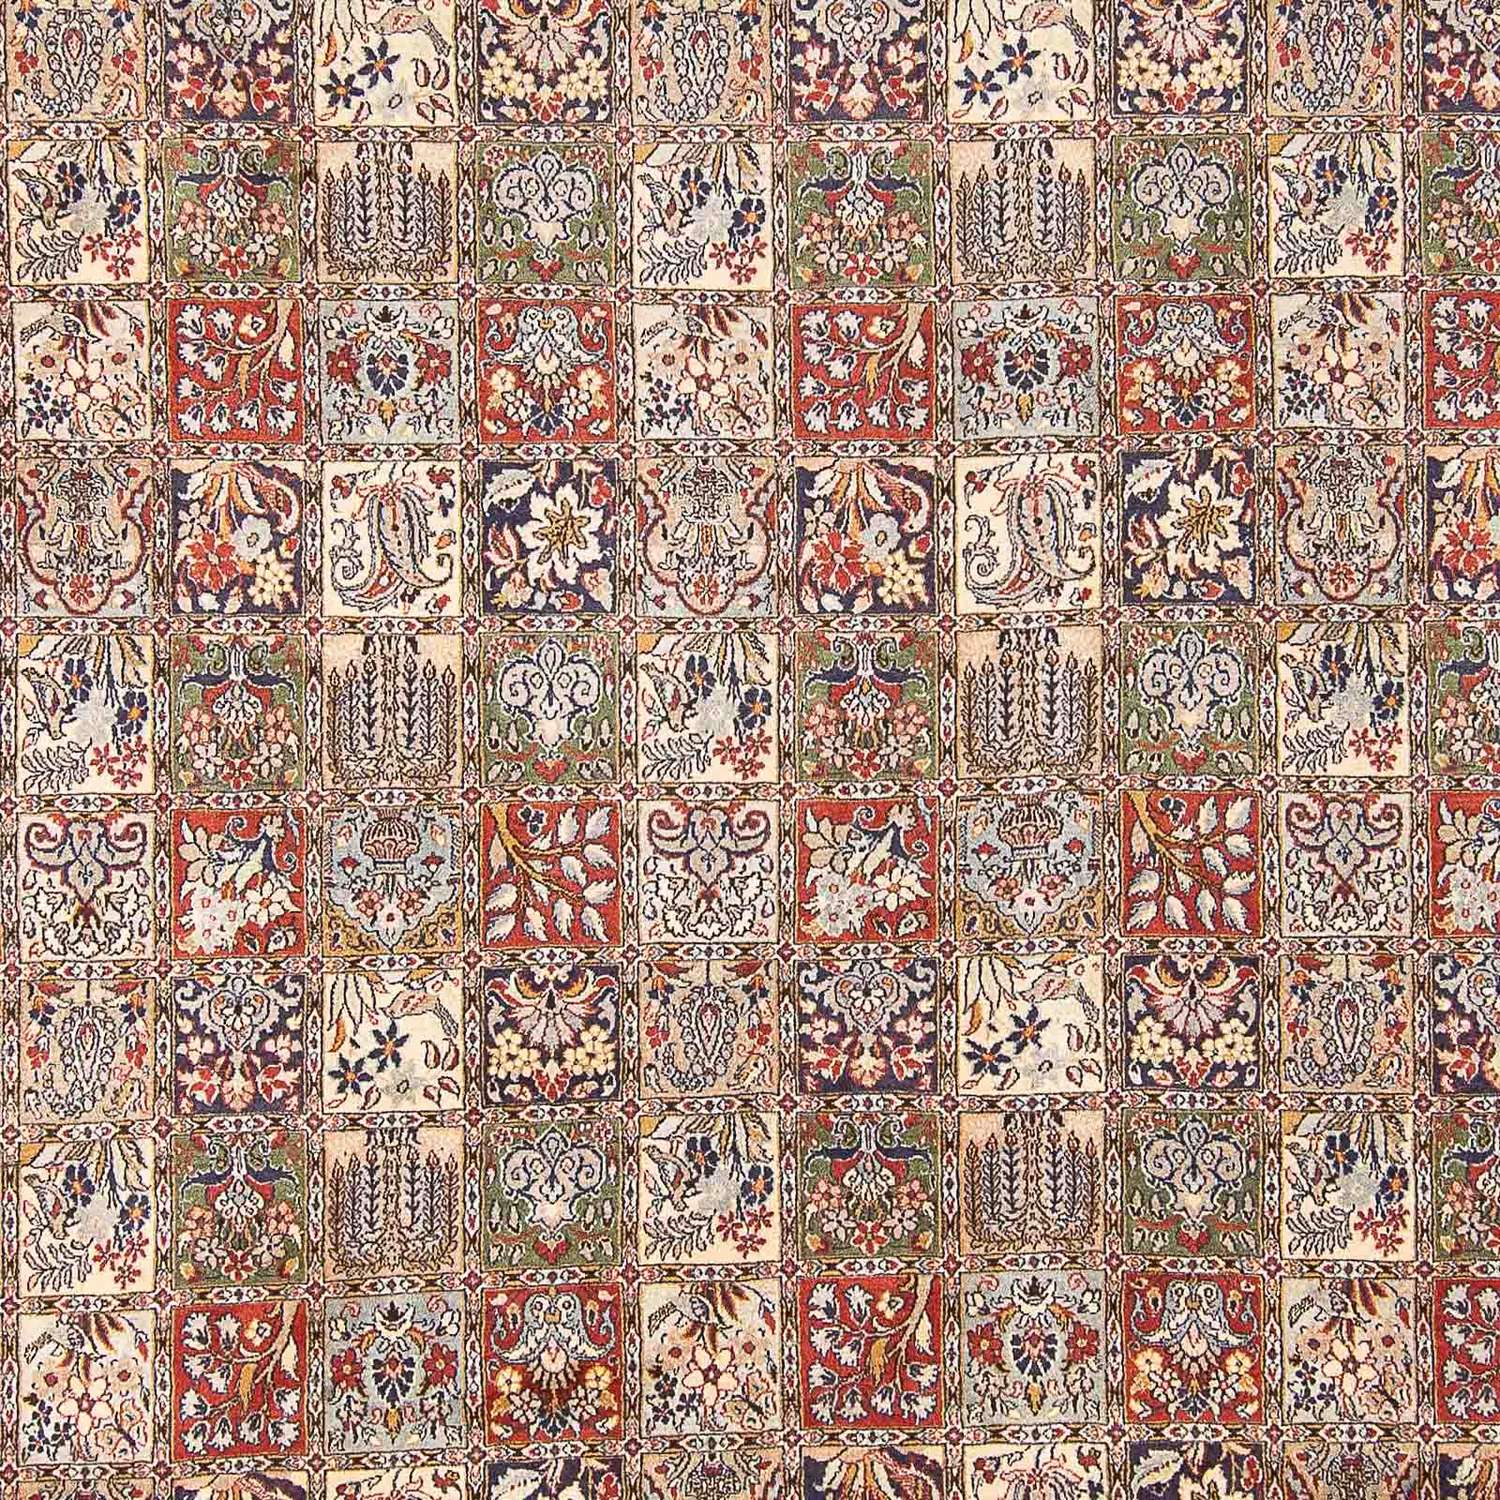 Persisk tæppe - Classic - 393 x 293 cm - flerfarvet